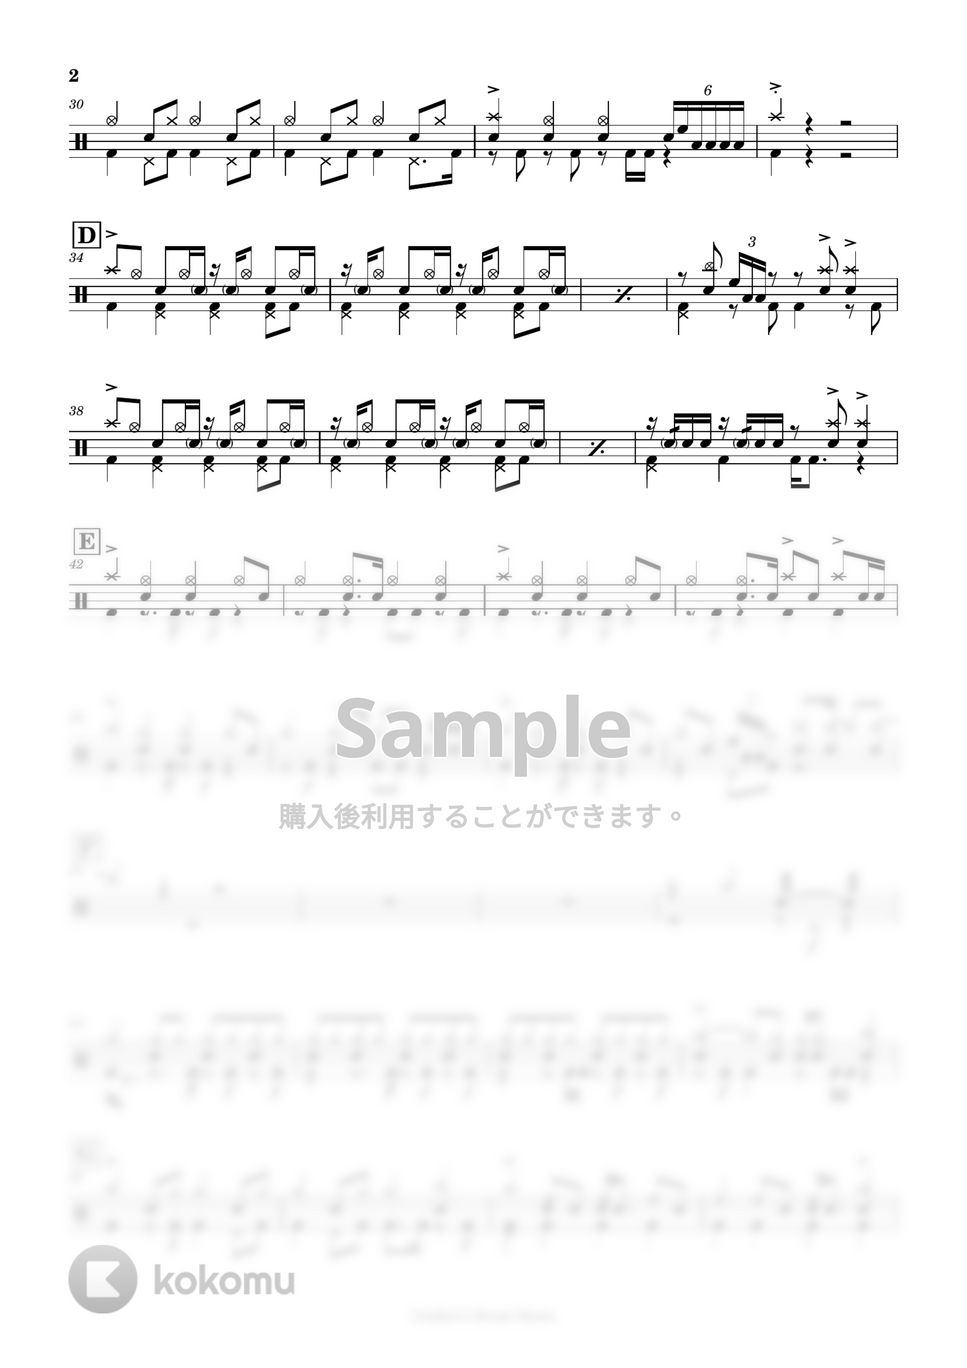 東京事変 - 仏だけ徒歩 by Cookie's Drum Score